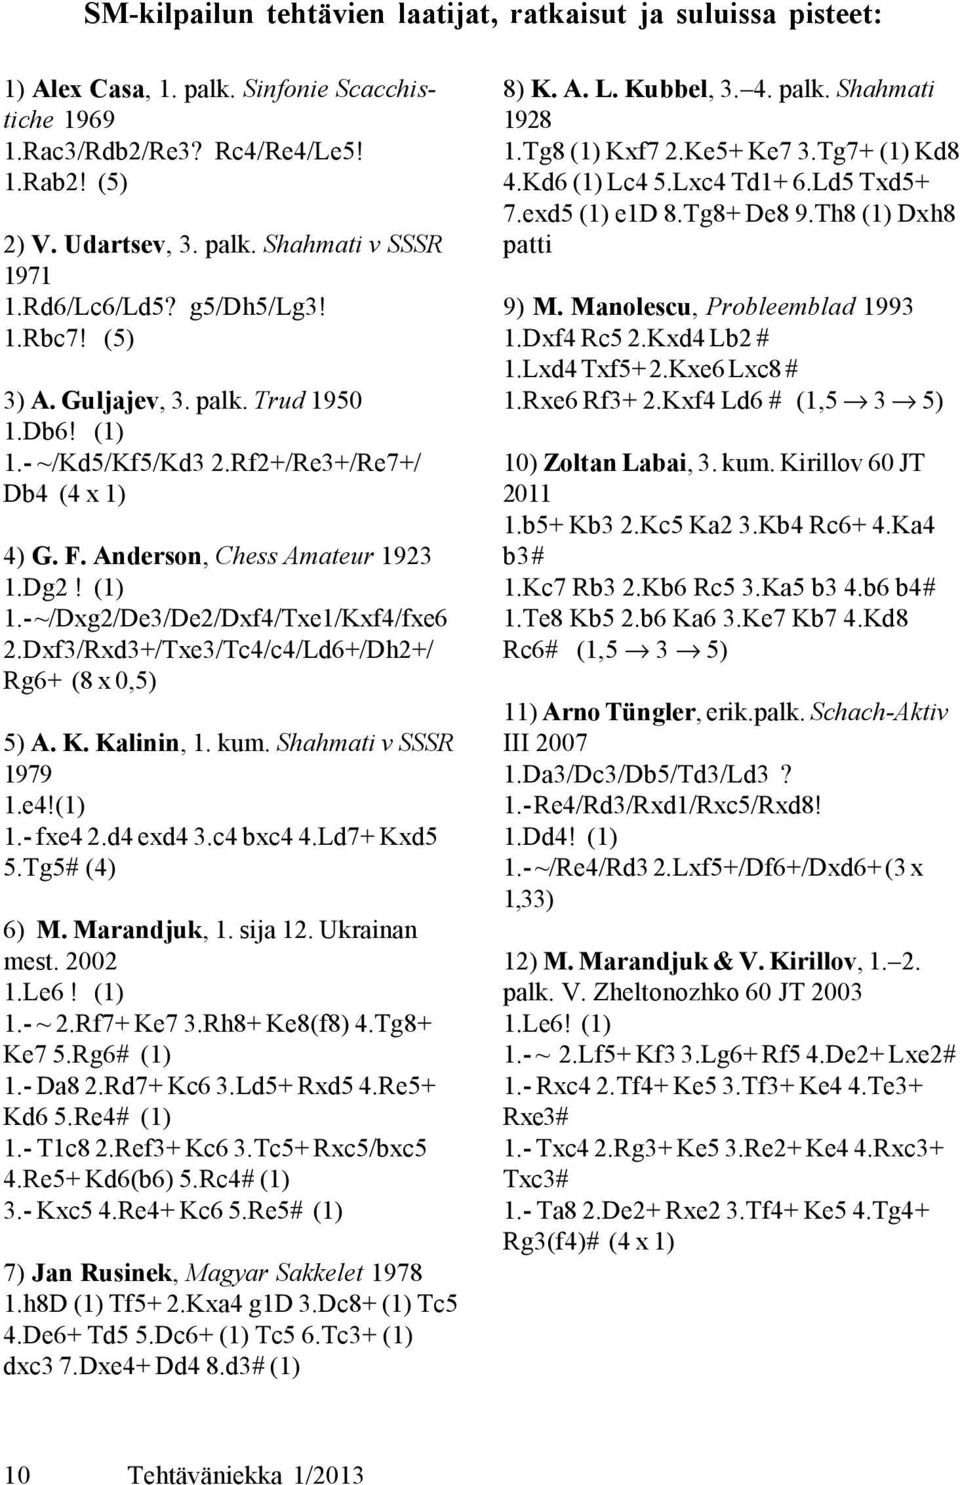 Dxf3/Rxd3+/Txe3/Tc4/c4/Ld6+/Dh2+/ Rg6+ (8 x 0,5) 5) A. K. Kalinin, 1. kum. Shahmati v SSSR 1979 1.e4!(1) 1.- fxe4 2.d4 exd4 3.c4 bxc4 4.Ld7+ Kxd5 5.Tg5# (4) 6) M. Marandjuk, 1. sija 12. Ukrainan mest.